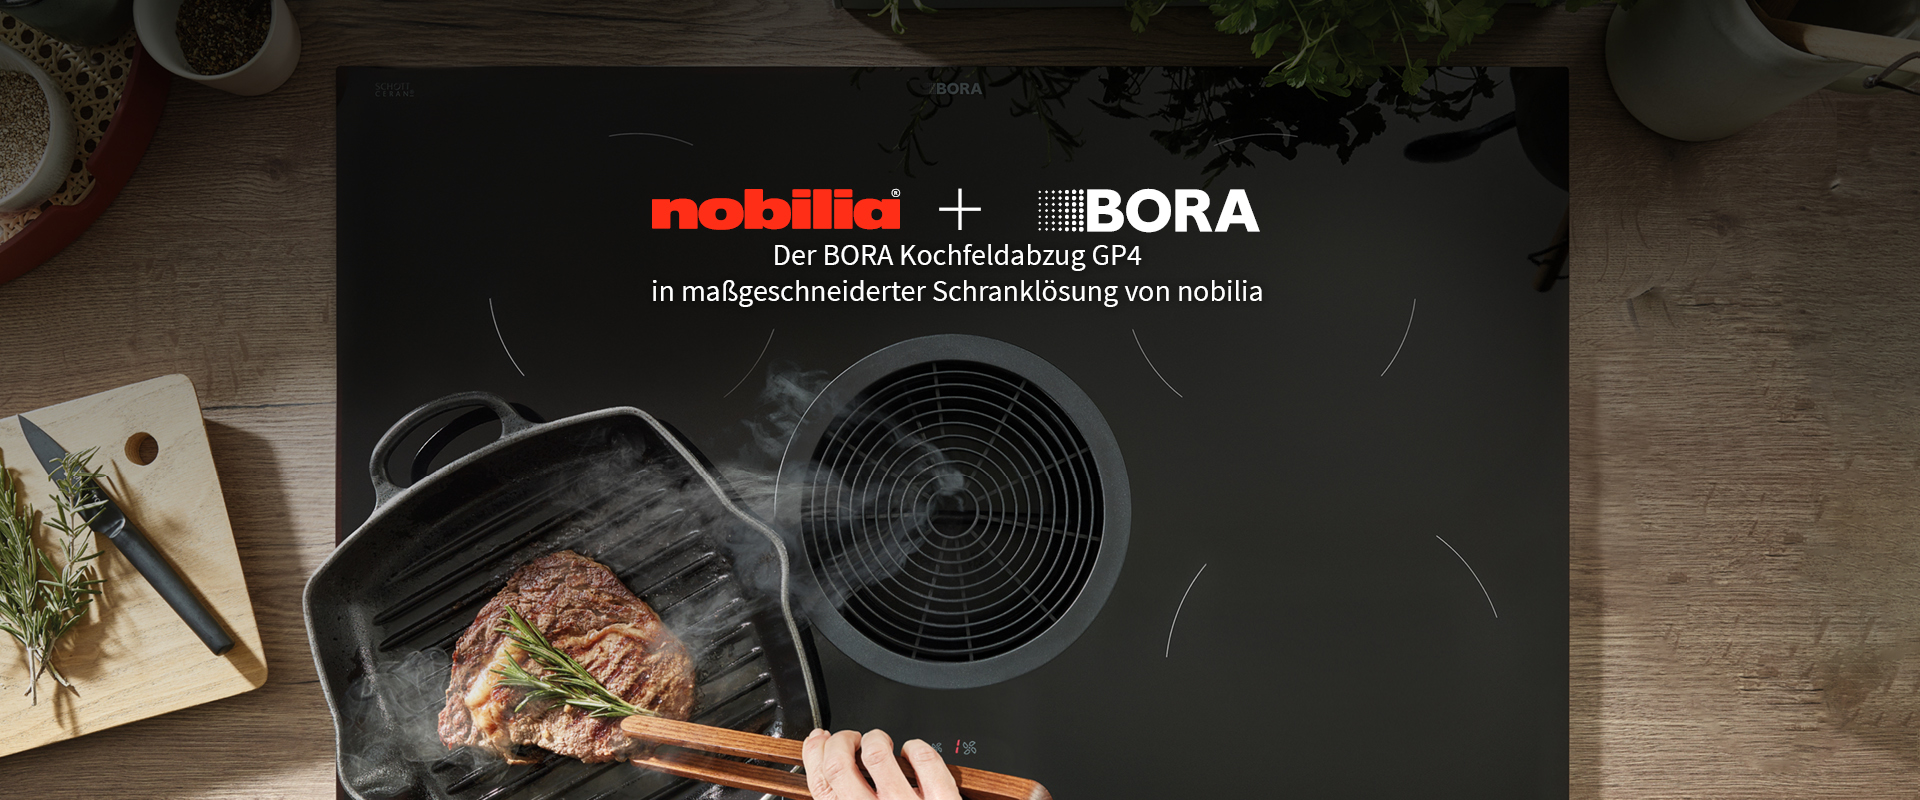 Der BORA Kochfeldabzug GP4 in maßgeschneiderter Schranklösung von nobilia.